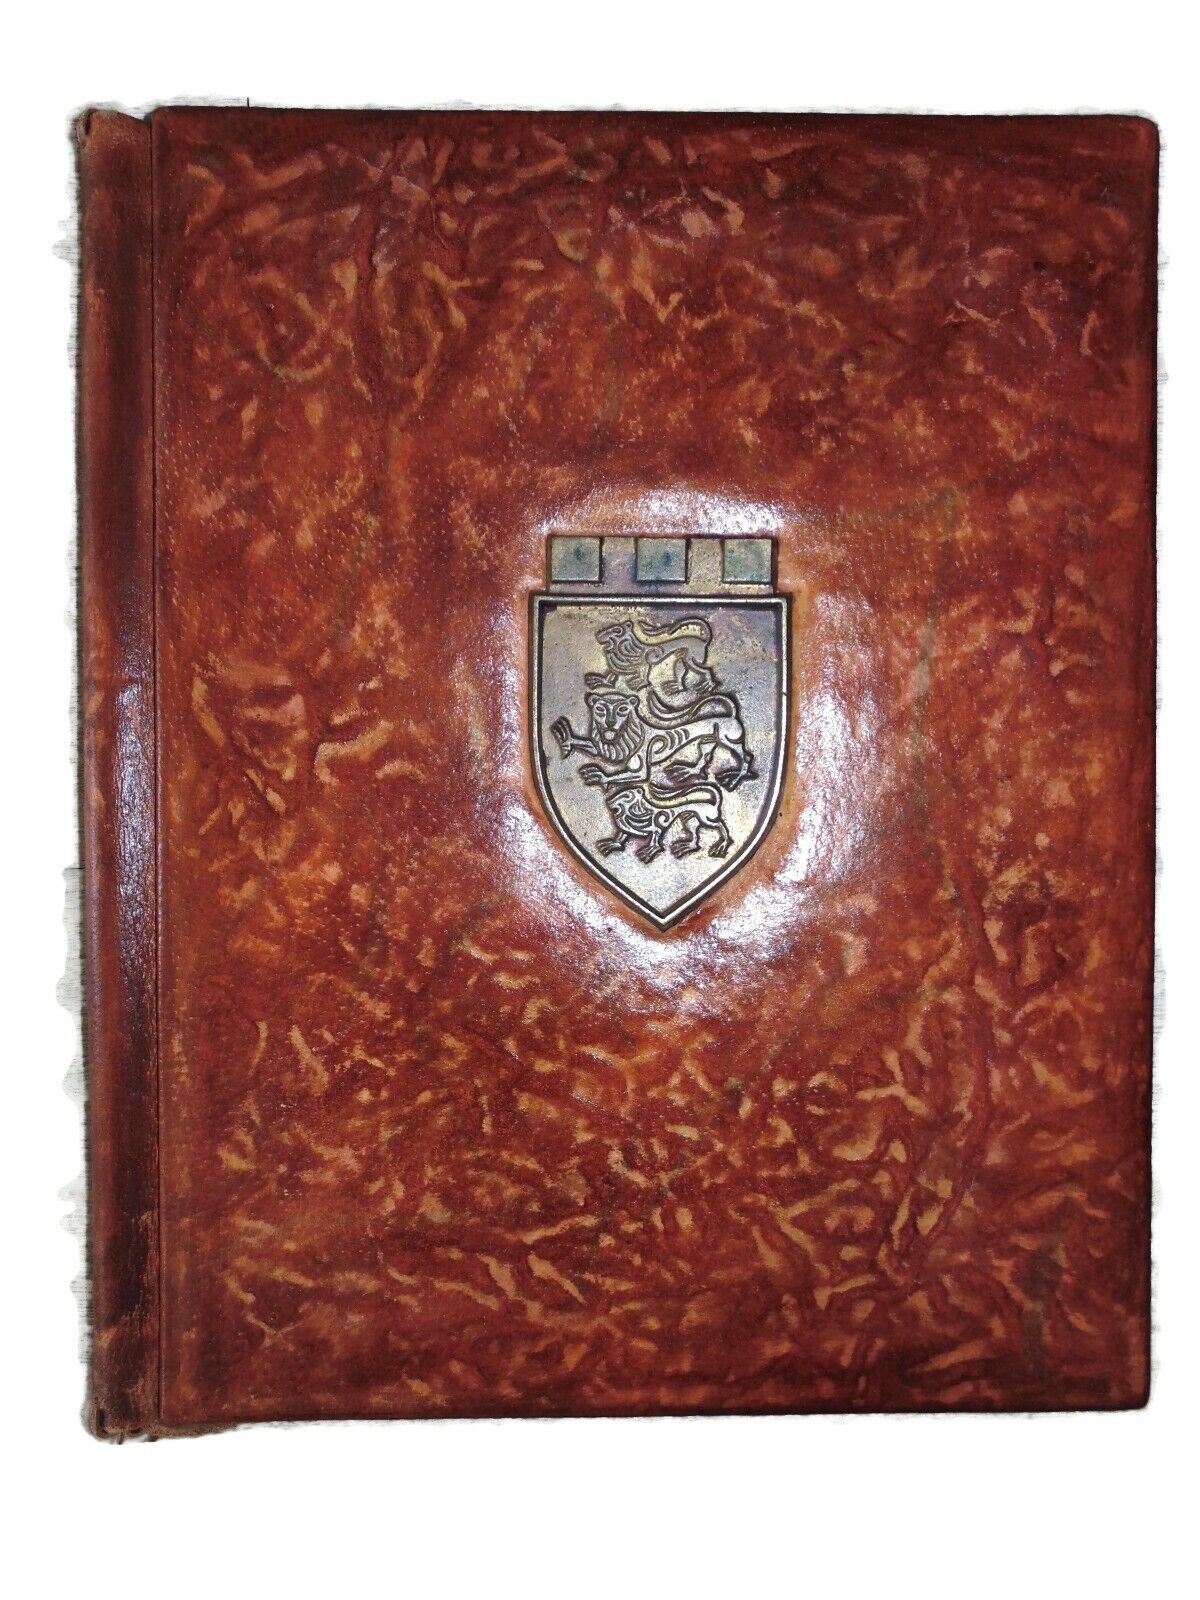 Vintage HUGE Brown Leather Bound Book Journal Cover Folder Crest Menu Portfolio